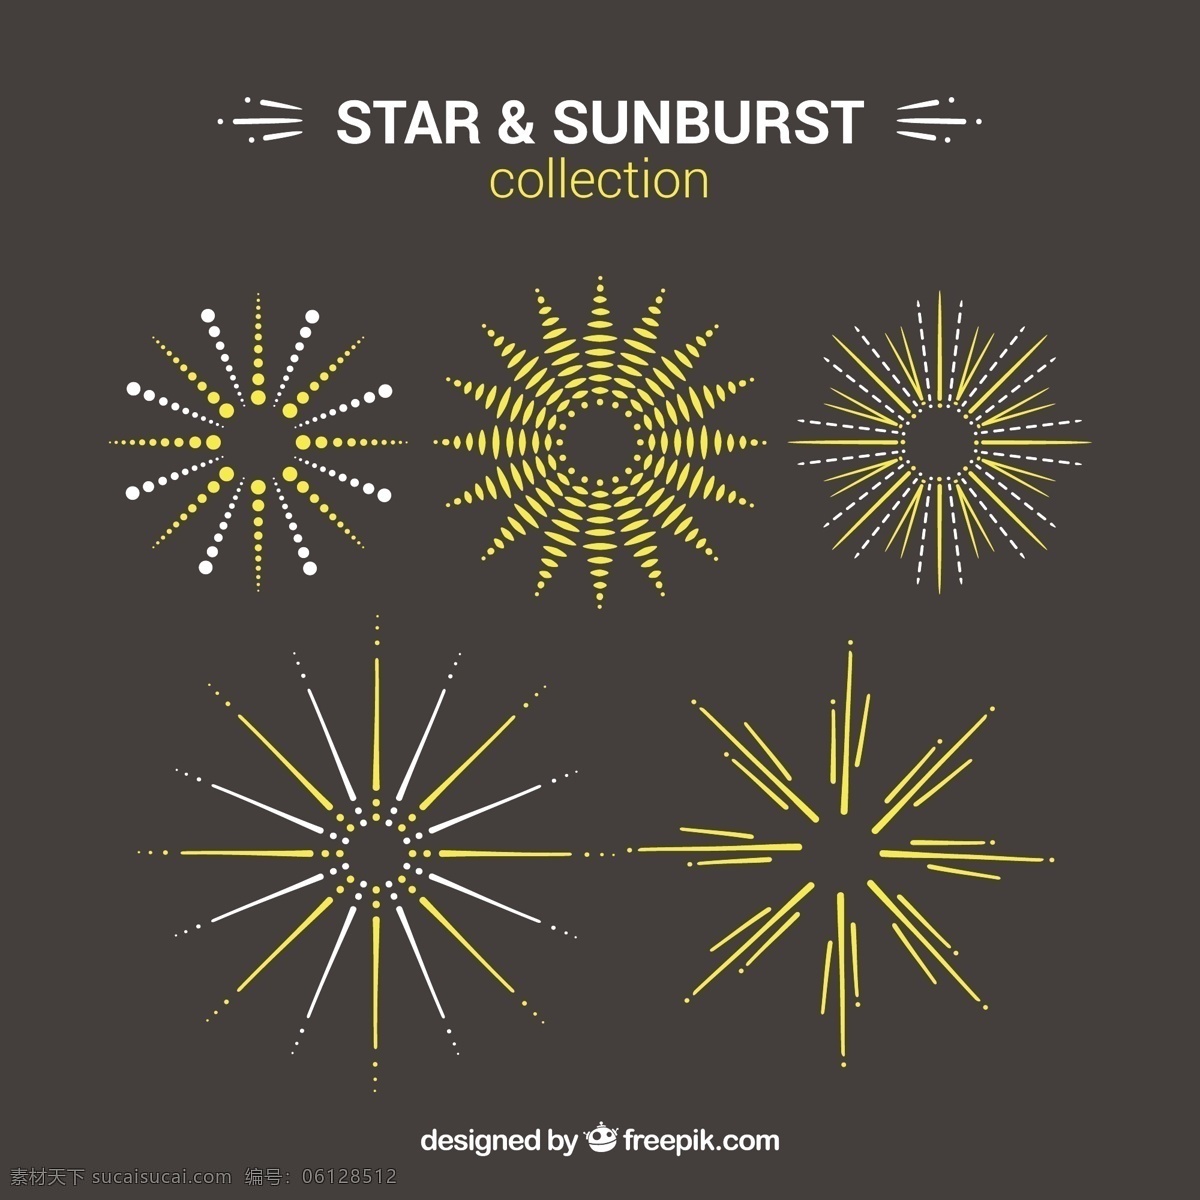 手绘 明星 装饰 元素 阳光 一方面 星星 太阳 线条 绘画 明亮 绘制 发亮 灰色